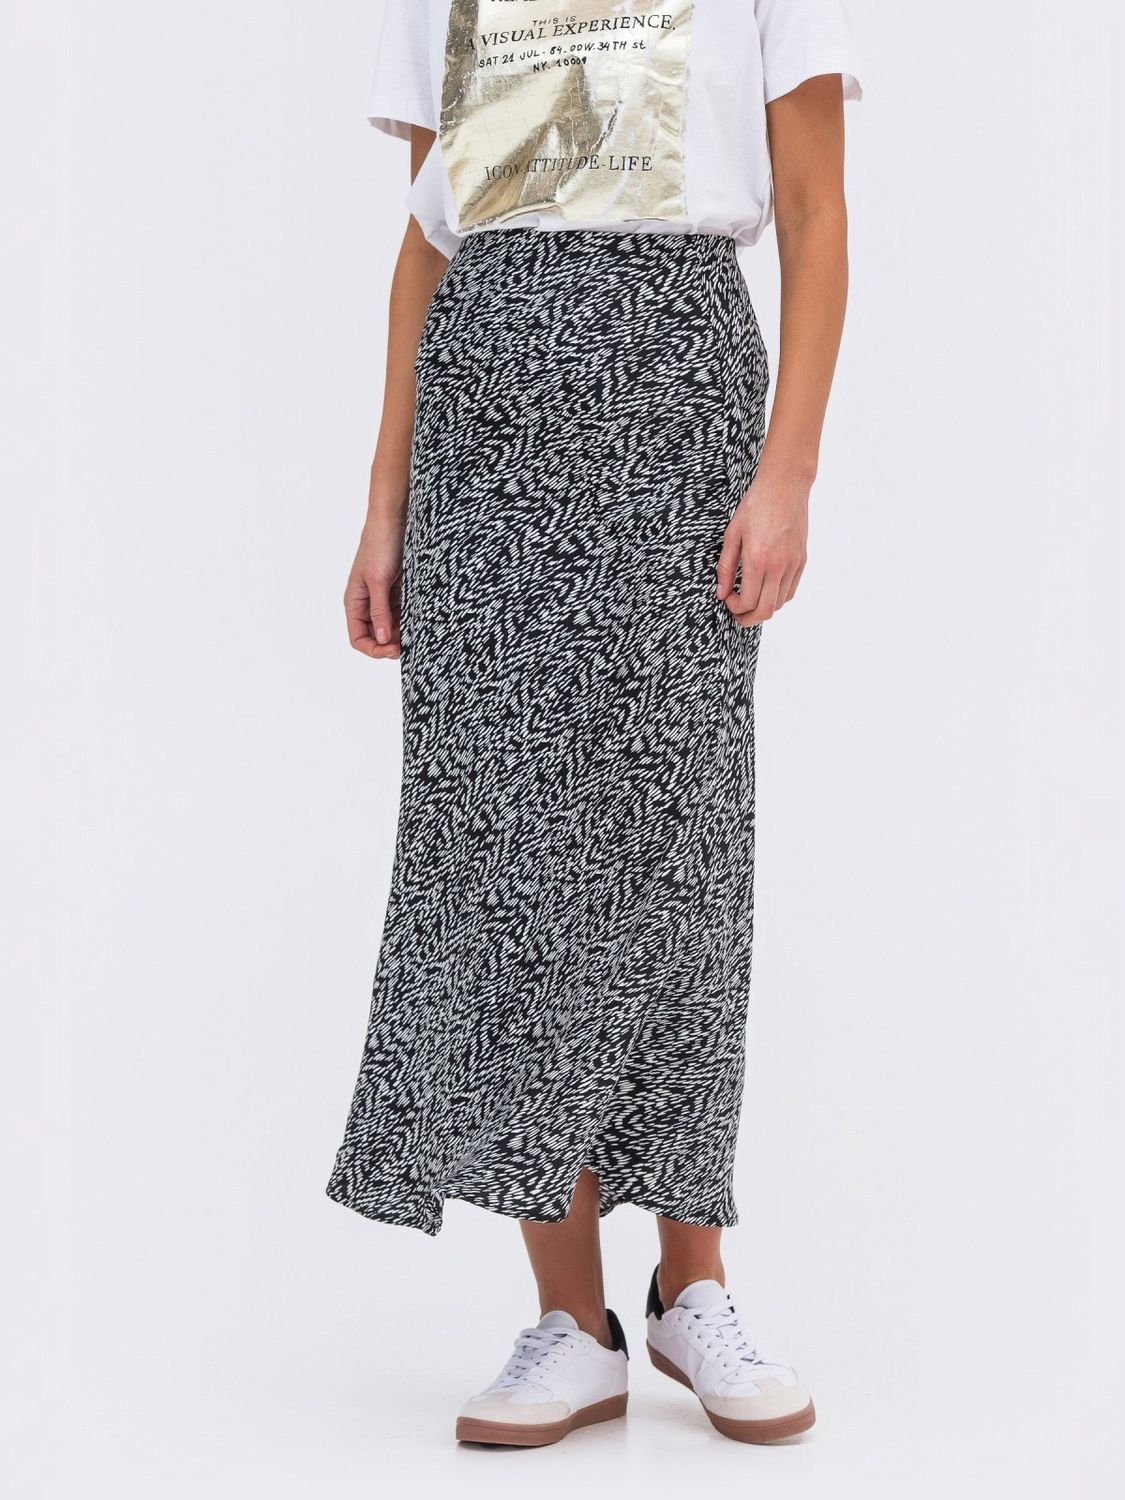 Женская юбка-полусолнце из сатин-шелка - фото